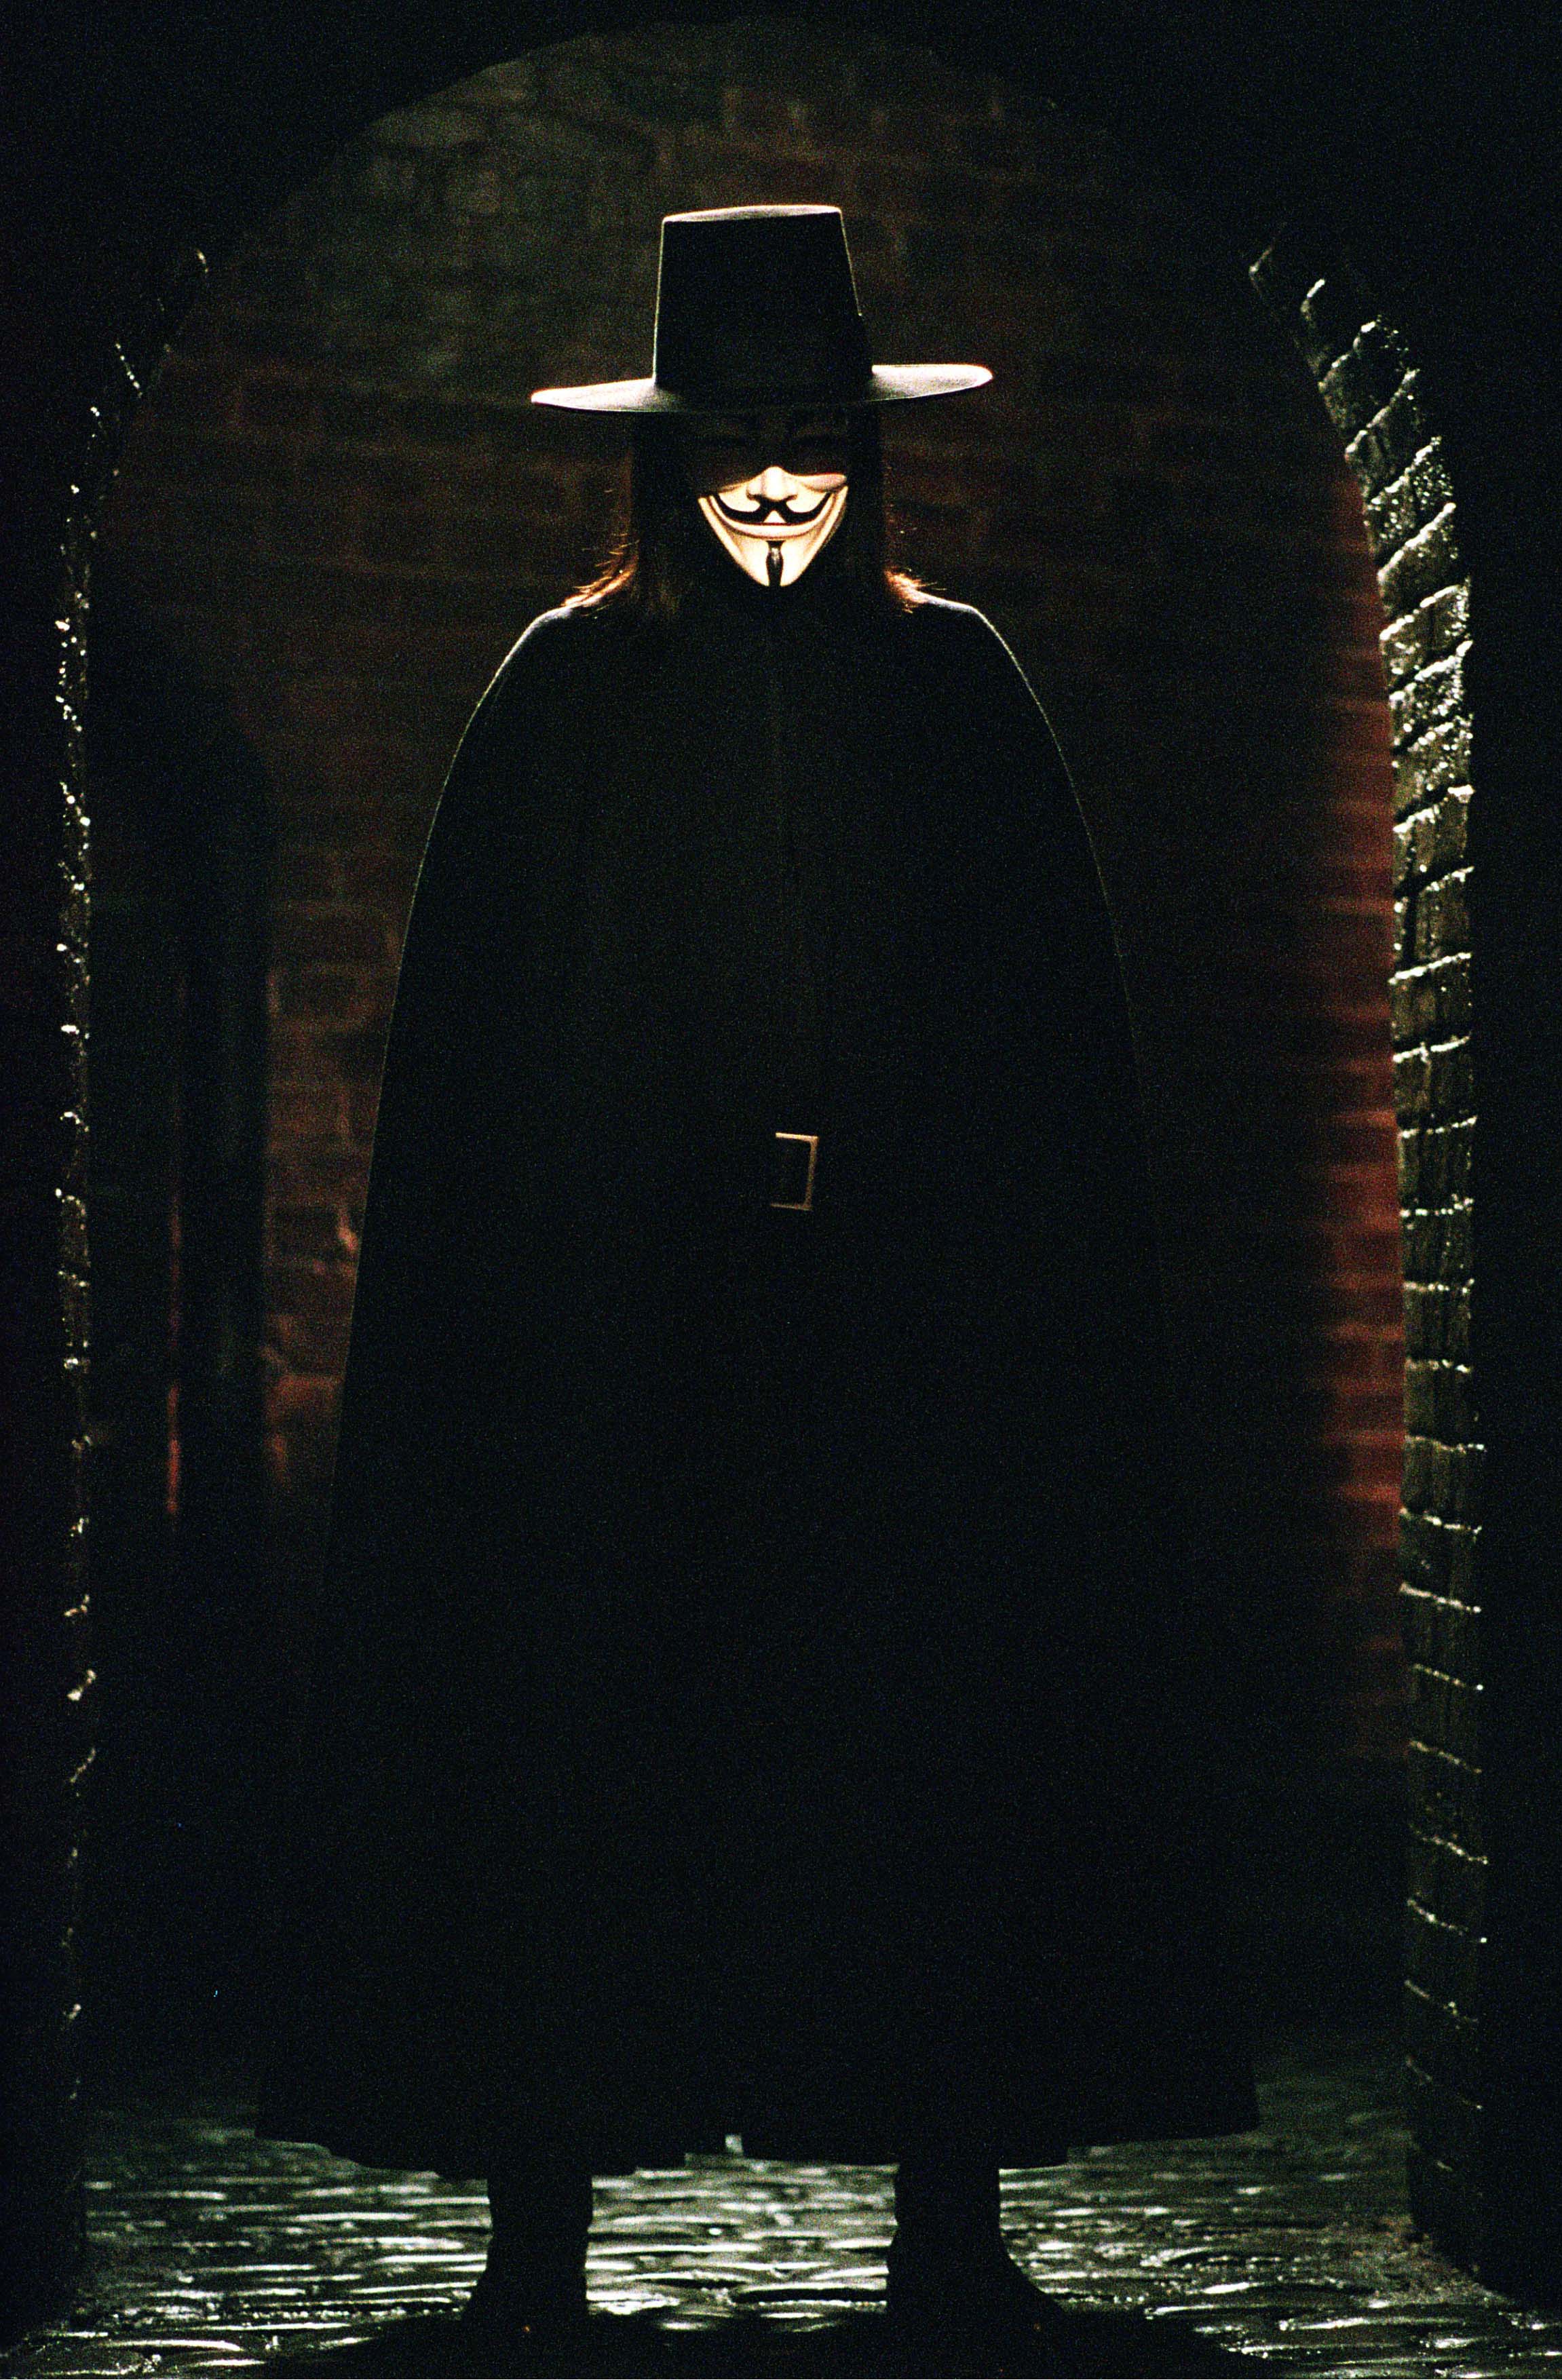 Vinst, V for Vendetta, Guy Fawkes, Masker, Demonstration, Anonymous